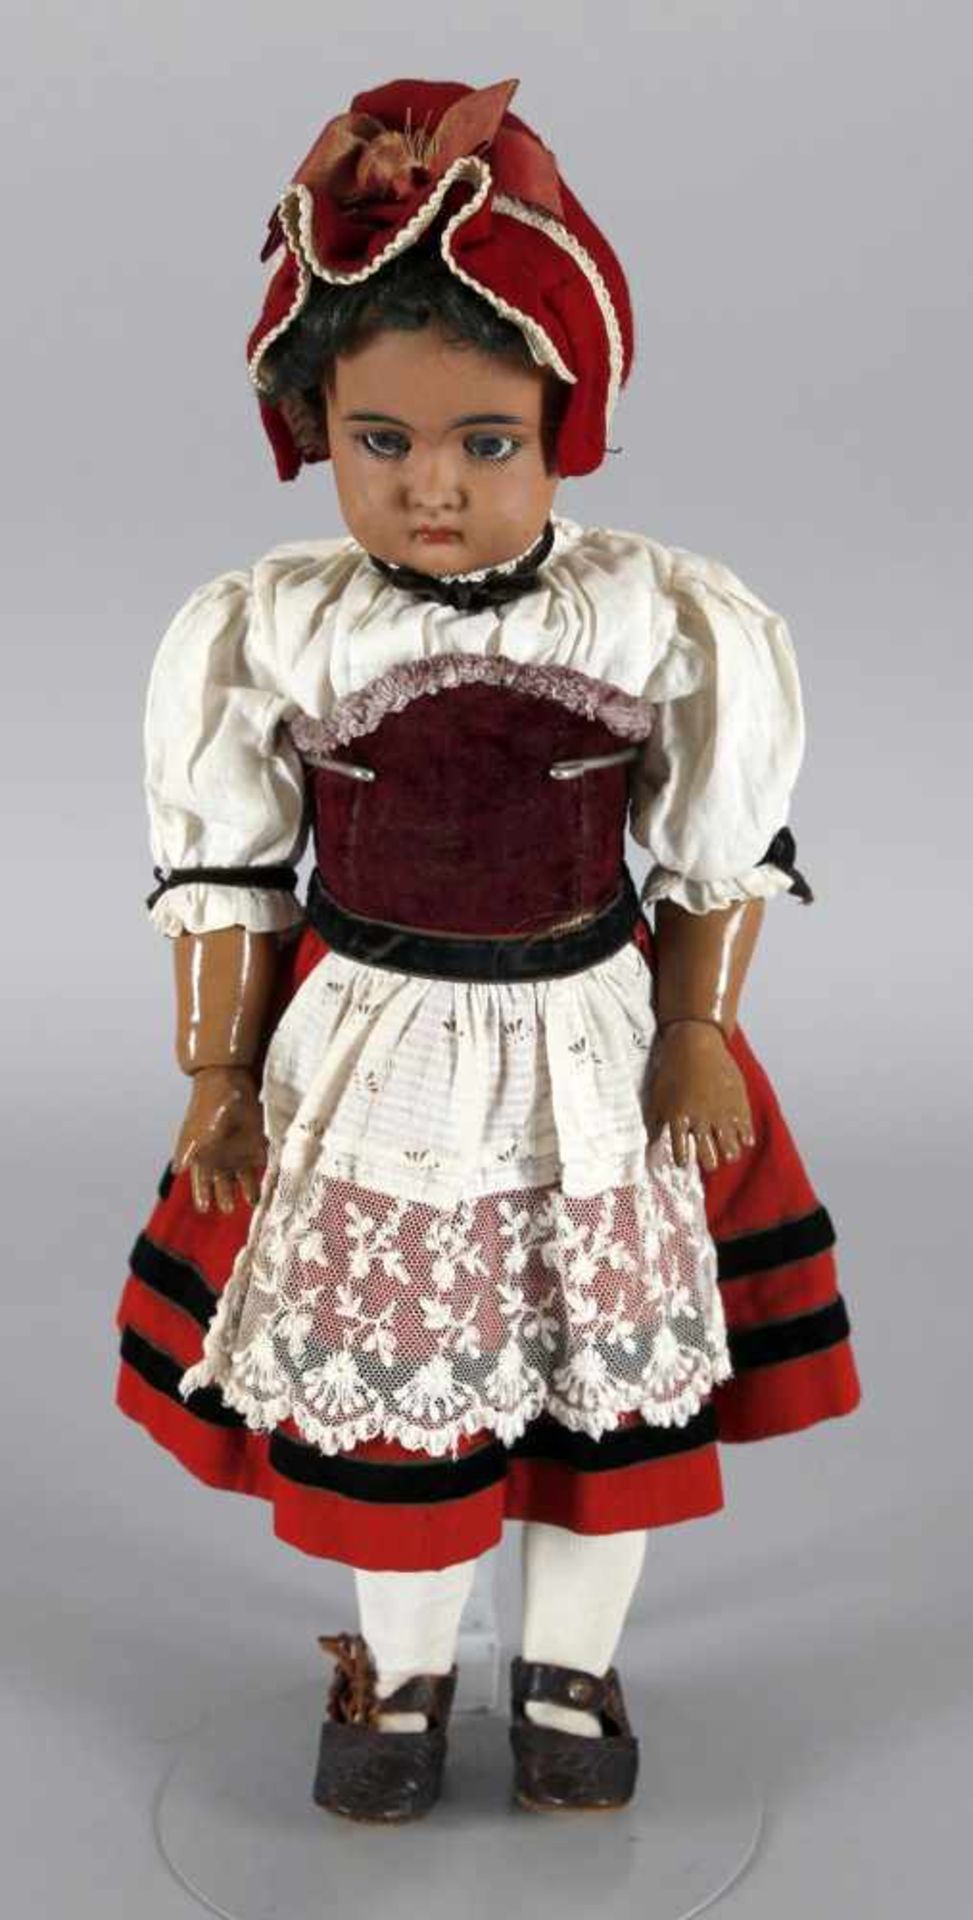 Puppe, deutscher Hersteller möglicherweise Cuno & Otto Dressel, Sonnenberg, um 1900